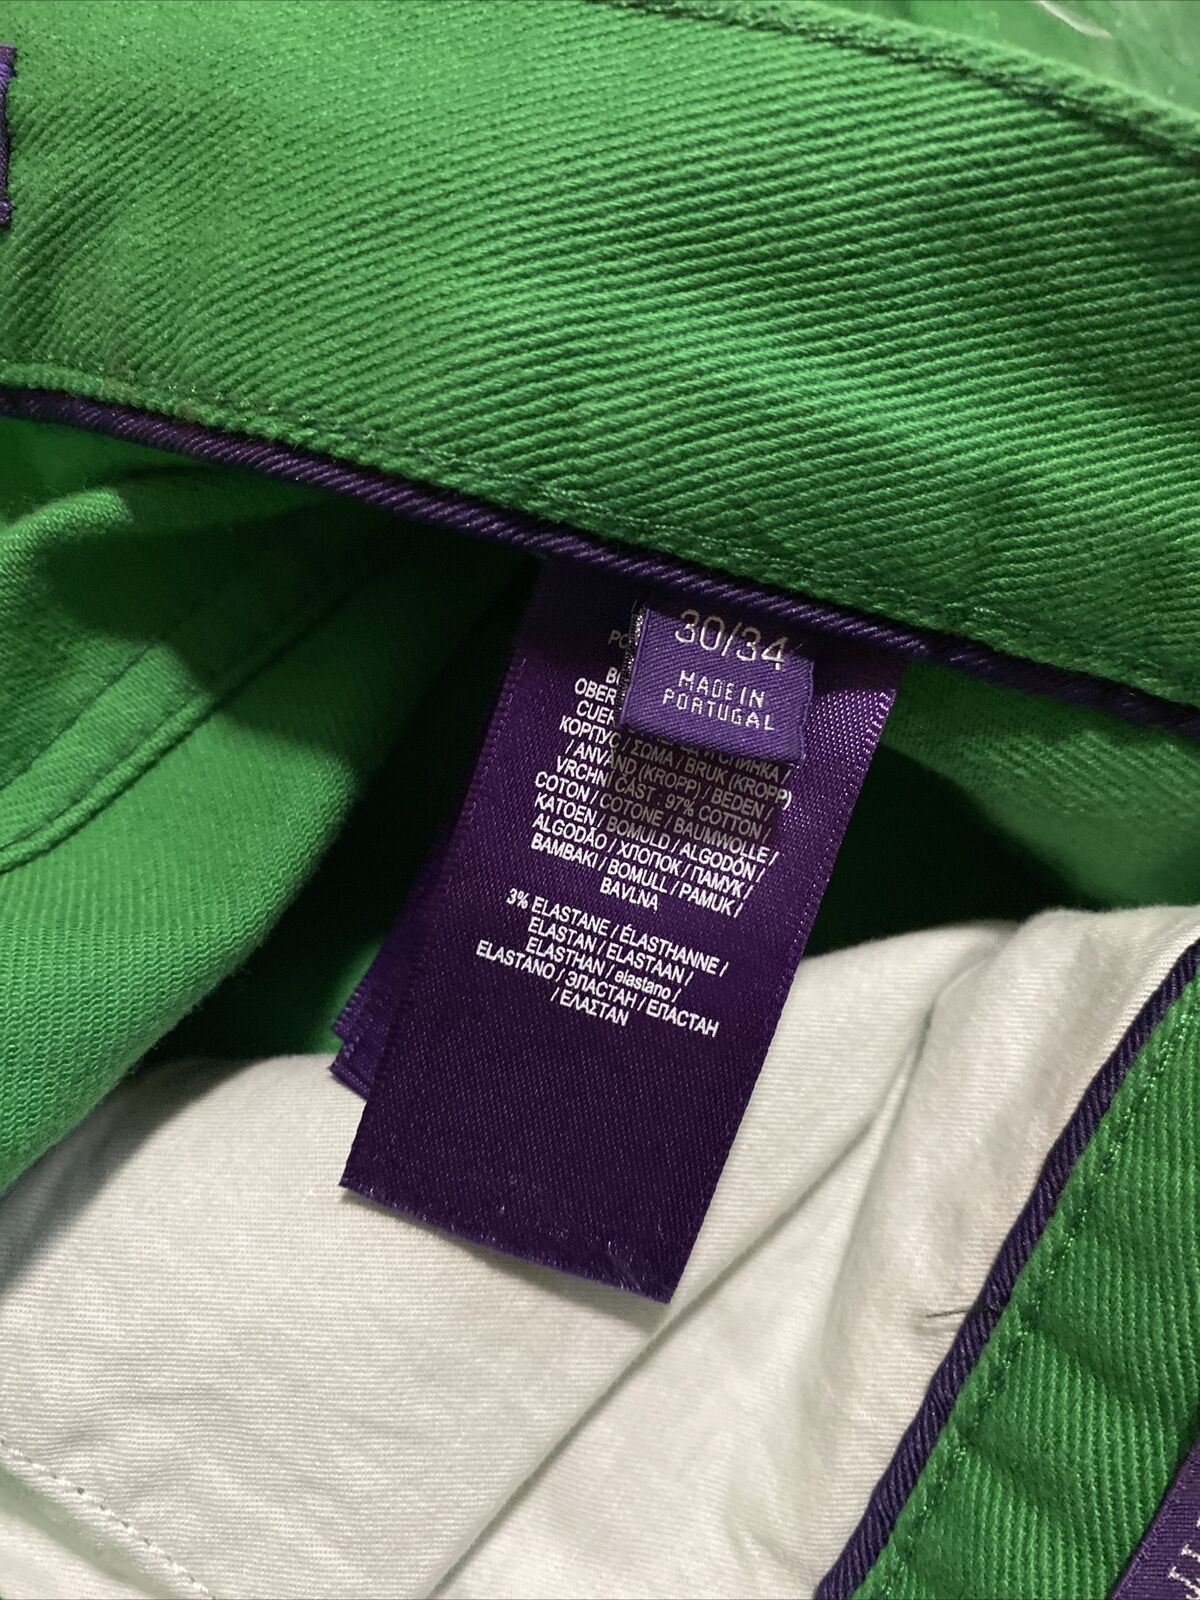 Neu mit Etikett: 495 $ Ralph Lauren Purple Label Herren Thompson Slim Jeans Hose Grün 30